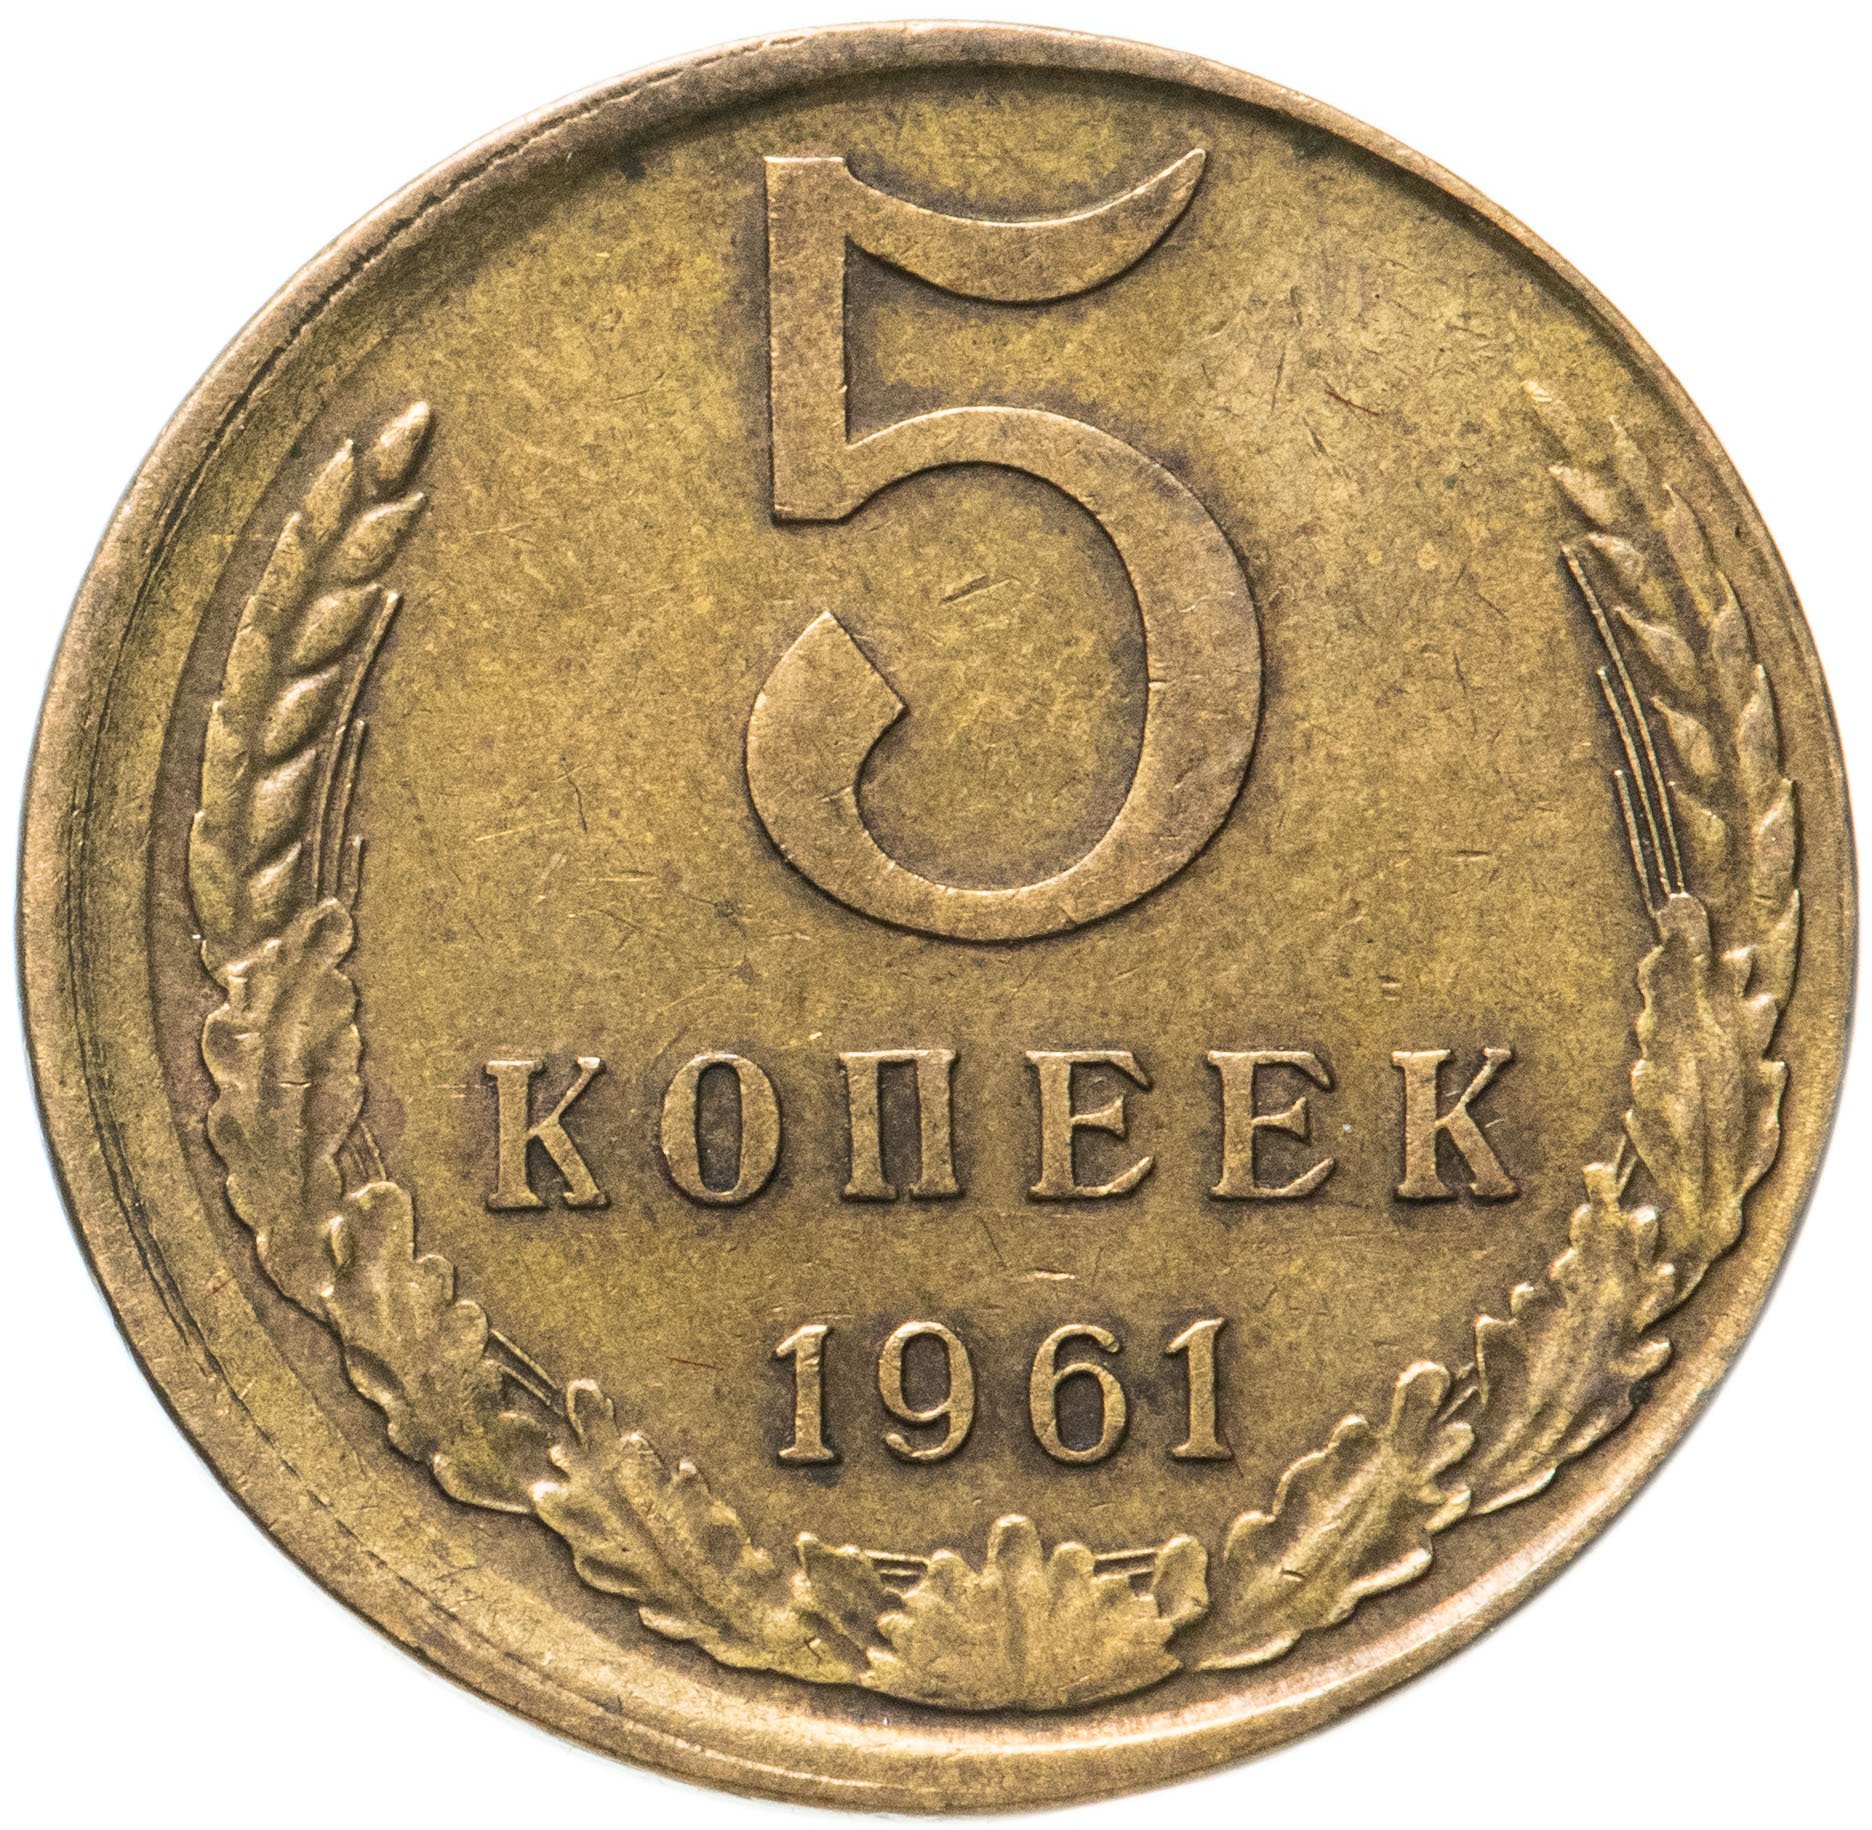 5 копейки 1961 года цена стоимость монеты. Советские монеты. Монета 2 копейки. Монеты СССР до 1961 года. Копейка монета.